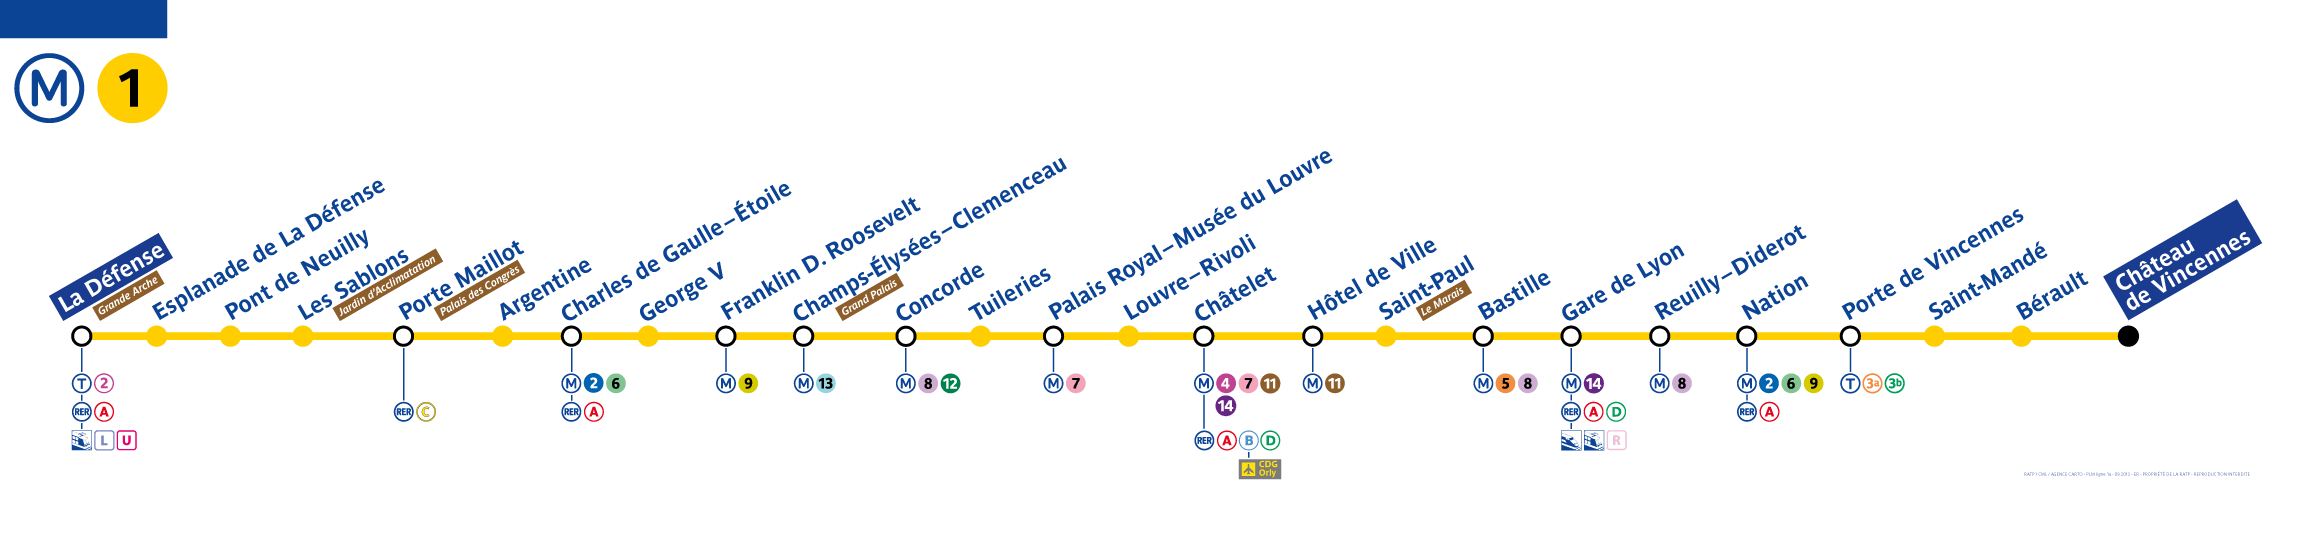 Paris metro line 1 map - Paris Metro Map